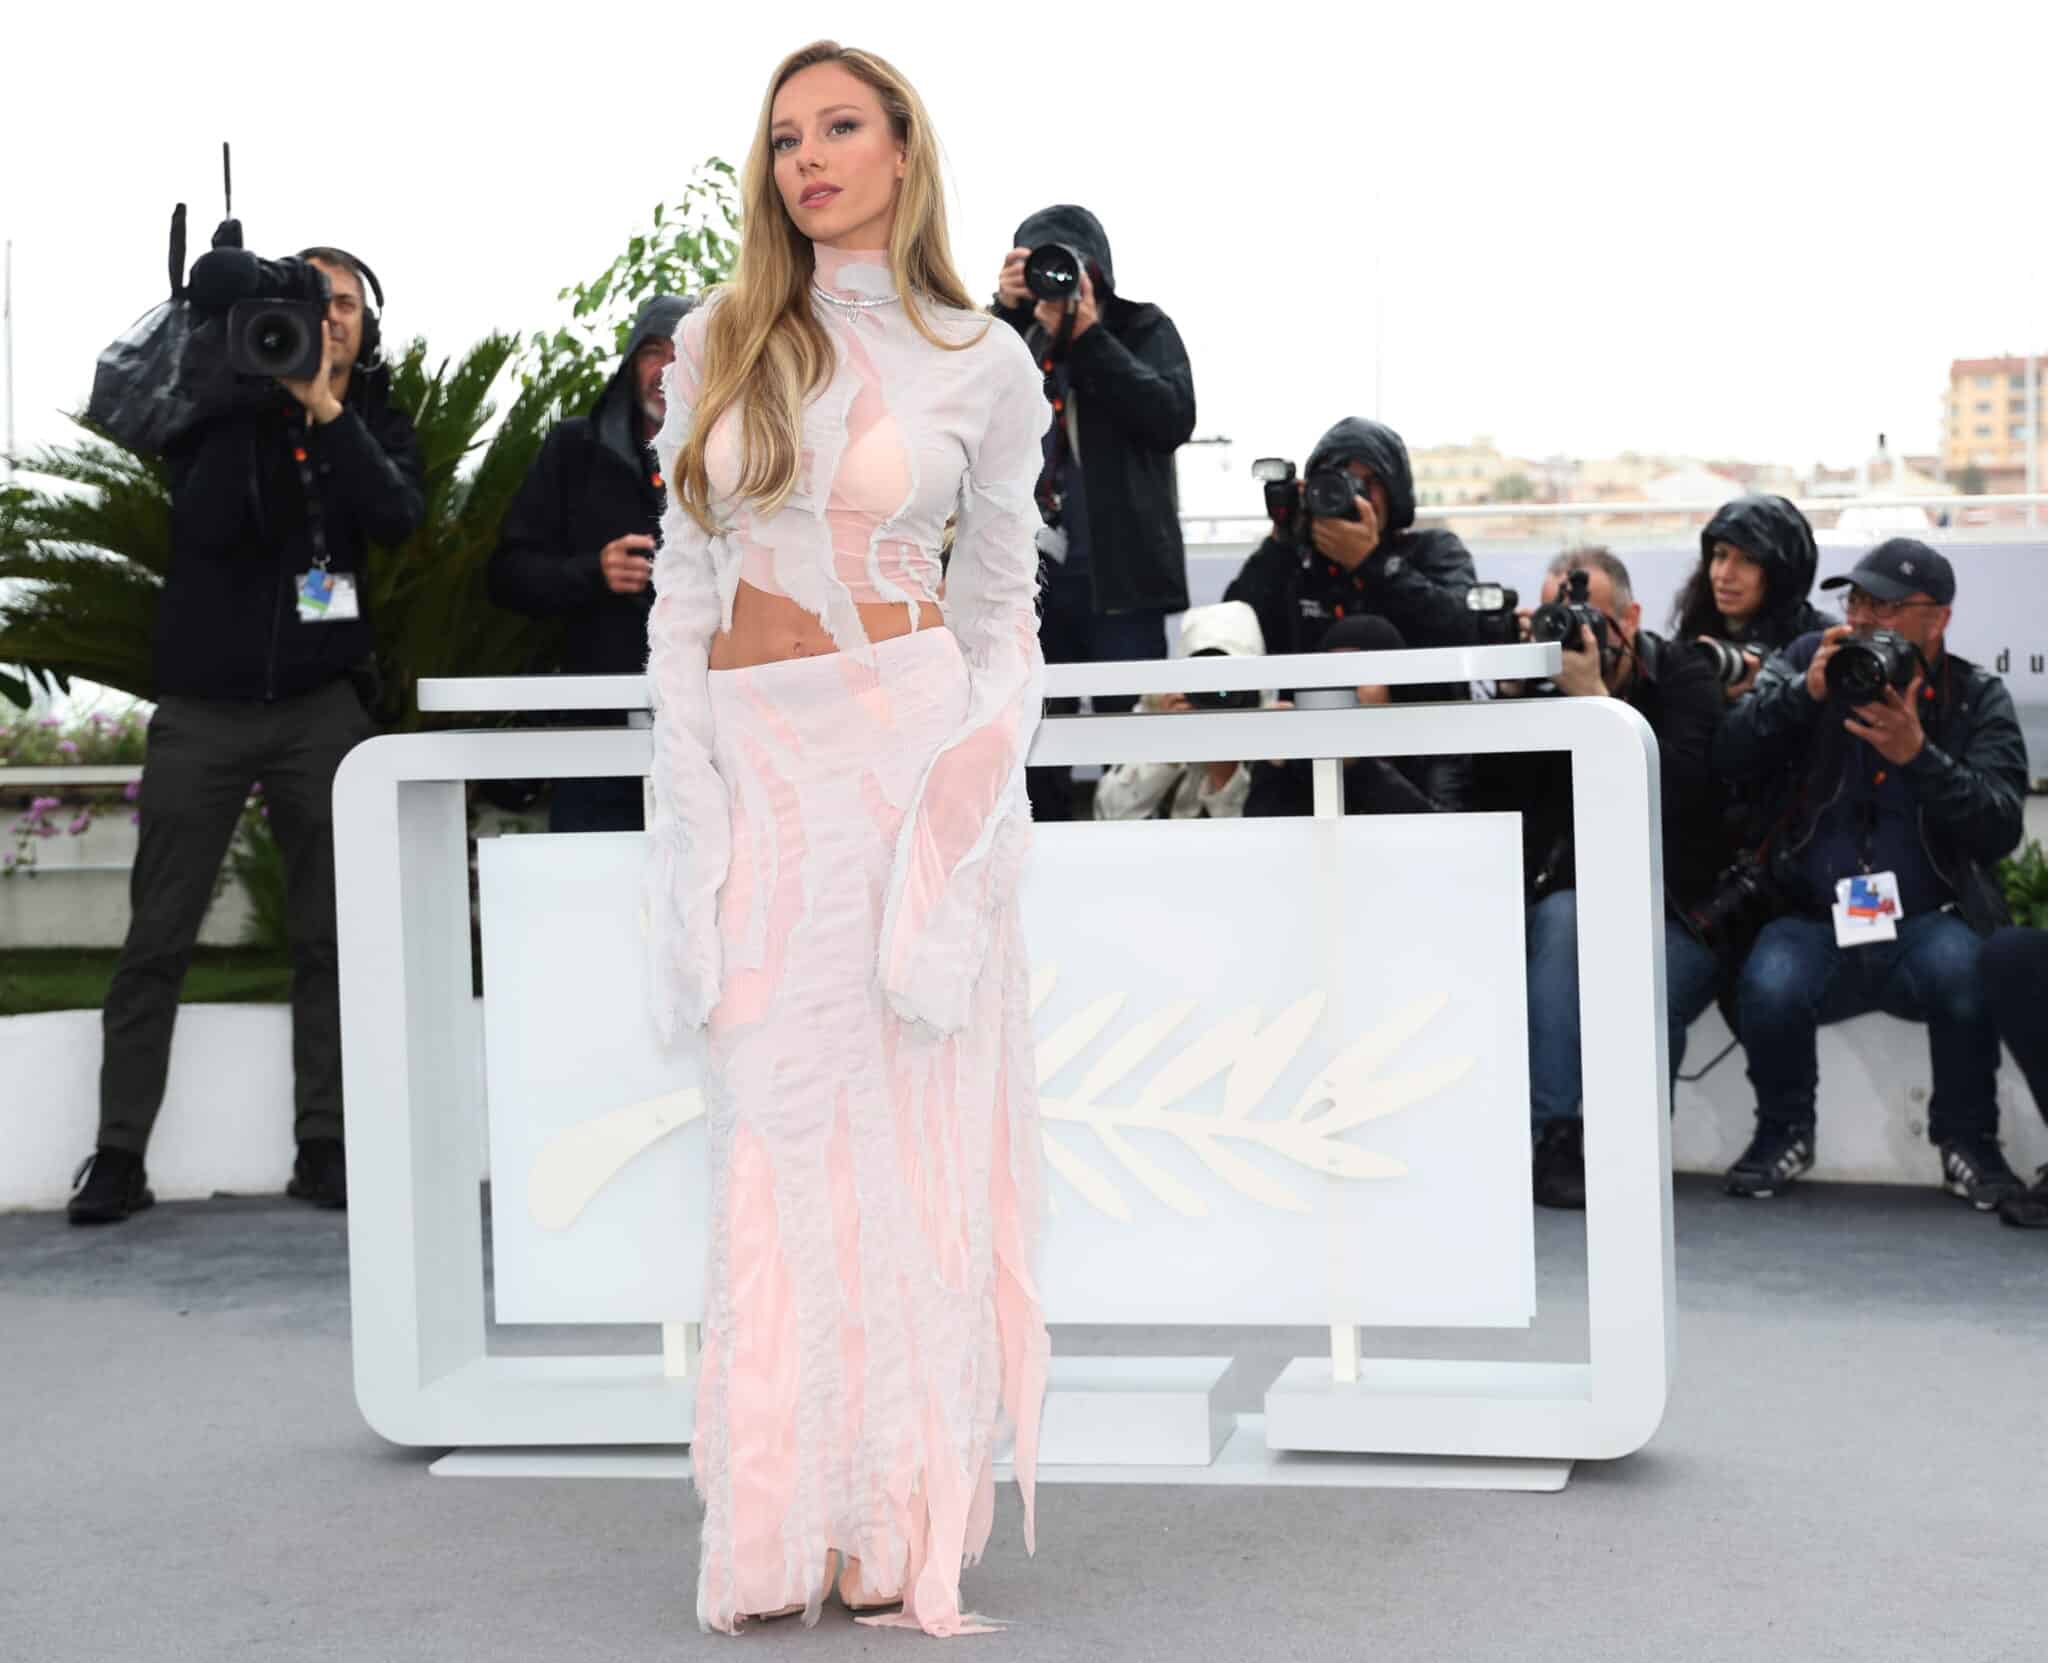 Ester Expósito hace sombra a Indiana Jones en Cannes. La actriz española deslumbró vestida de Versace en la alfombra roja previa al estreno mundial de la última aventura de Indiana Jones.